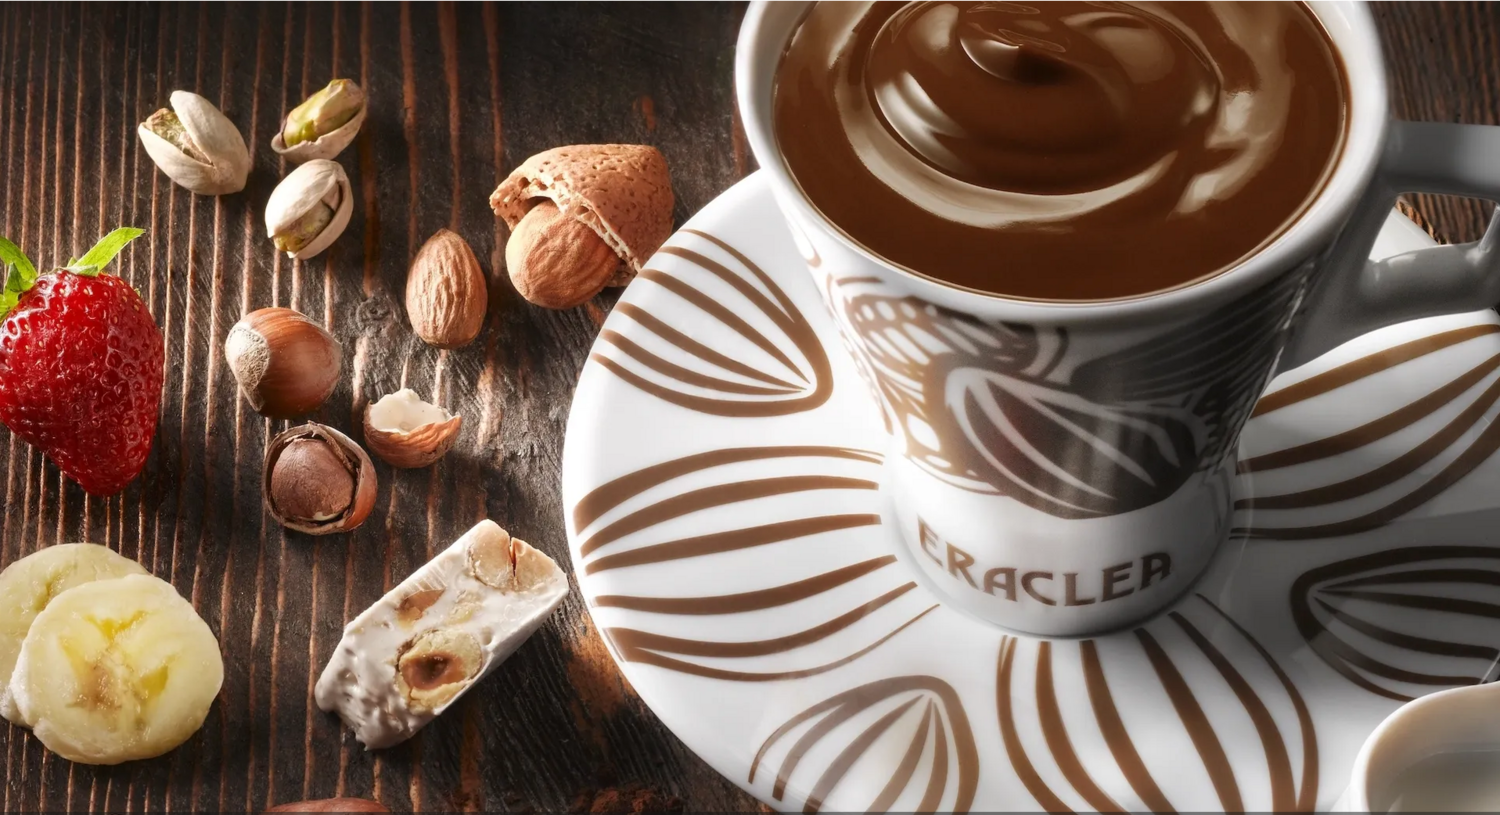 Klassische Zartbitterschokolade - OHNE ZUCKERZUSATZ - Portionsbeutel 32g Eraclea Nr. 15 39% Kakao